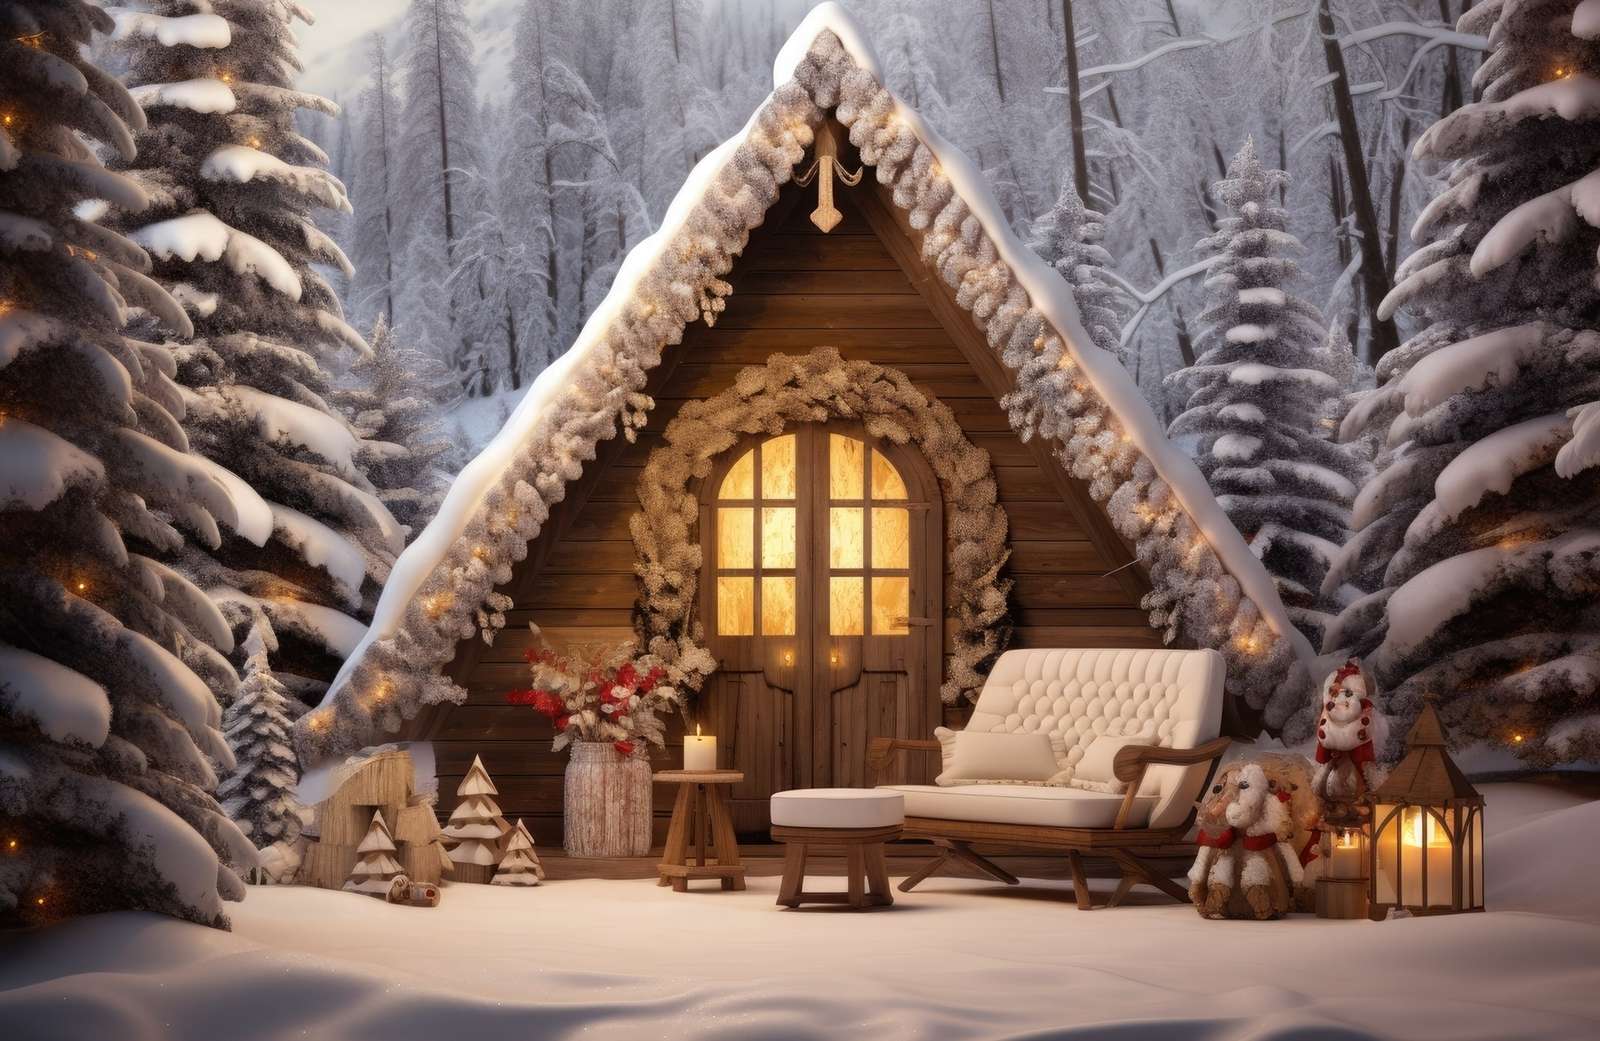 En lykta och en soffa i snön framför ett upplyst hus pussel på nätet